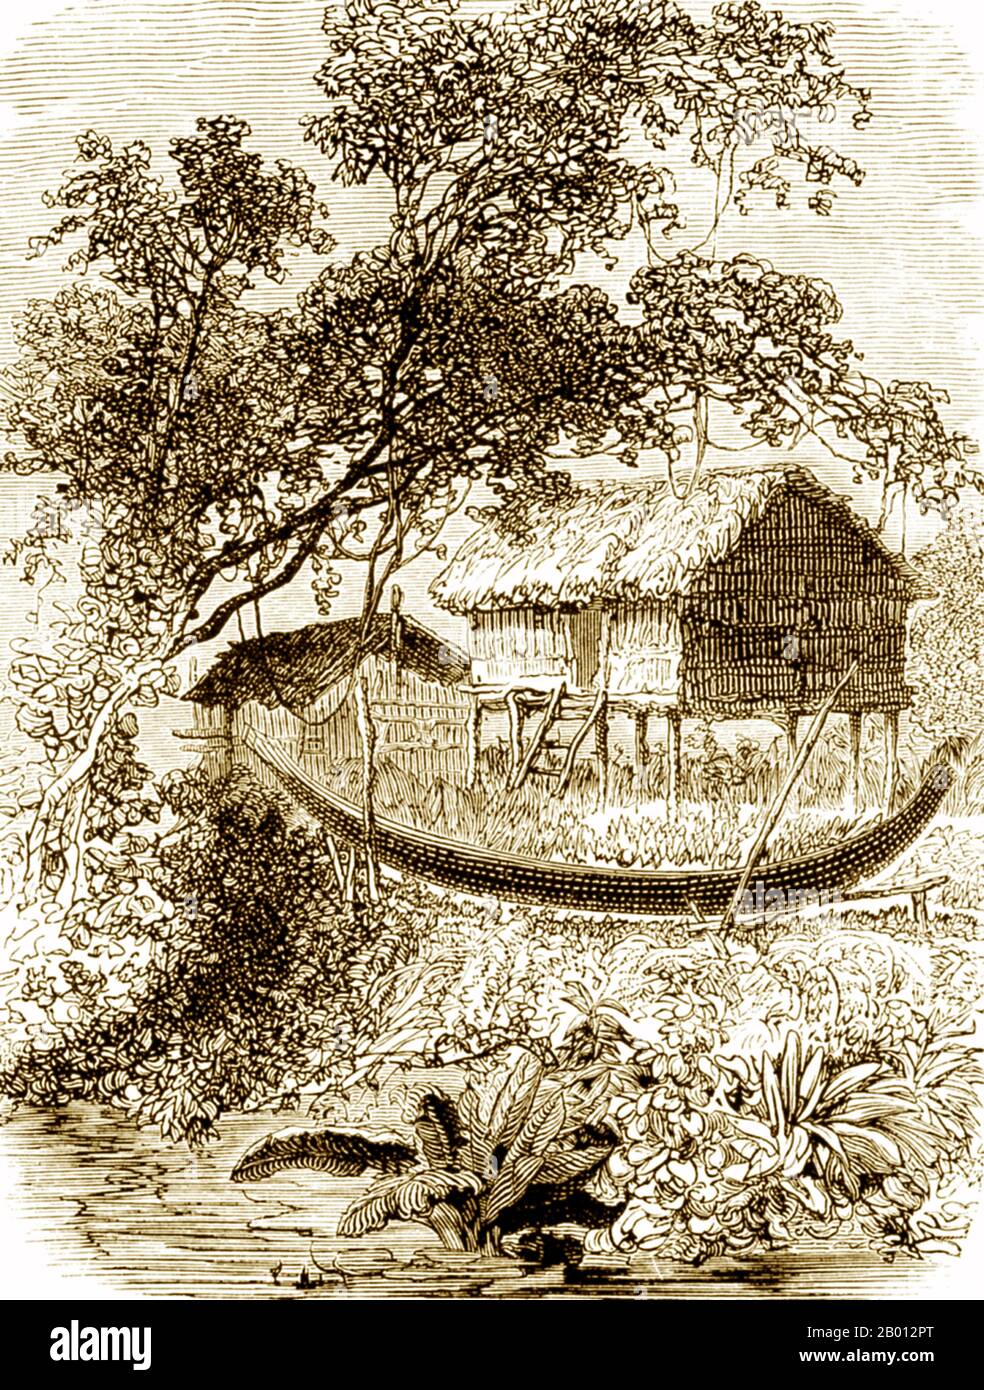 Laos/Cambodge: Un long pirogue se trouve devant une maison traditionnelle sur pilotis par les rives du Mékong. Gravure d'Henri Mouhot (1826-1861), 19e siècle. Les récits de courses de pirogue en Indochine remontent à la période angkorienne où les Khmers sous le roi Jayavarman VII ont triomphé des Chams de Champa après une guerre navale prolongée (1177-81). Des années plus tard, les colons français ont assisté à des courses de bateaux qui sont considérées comme les précurseurs des courses de bateaux-dragons et de serpents de naga d'aujourd'hui. Banque D'Images